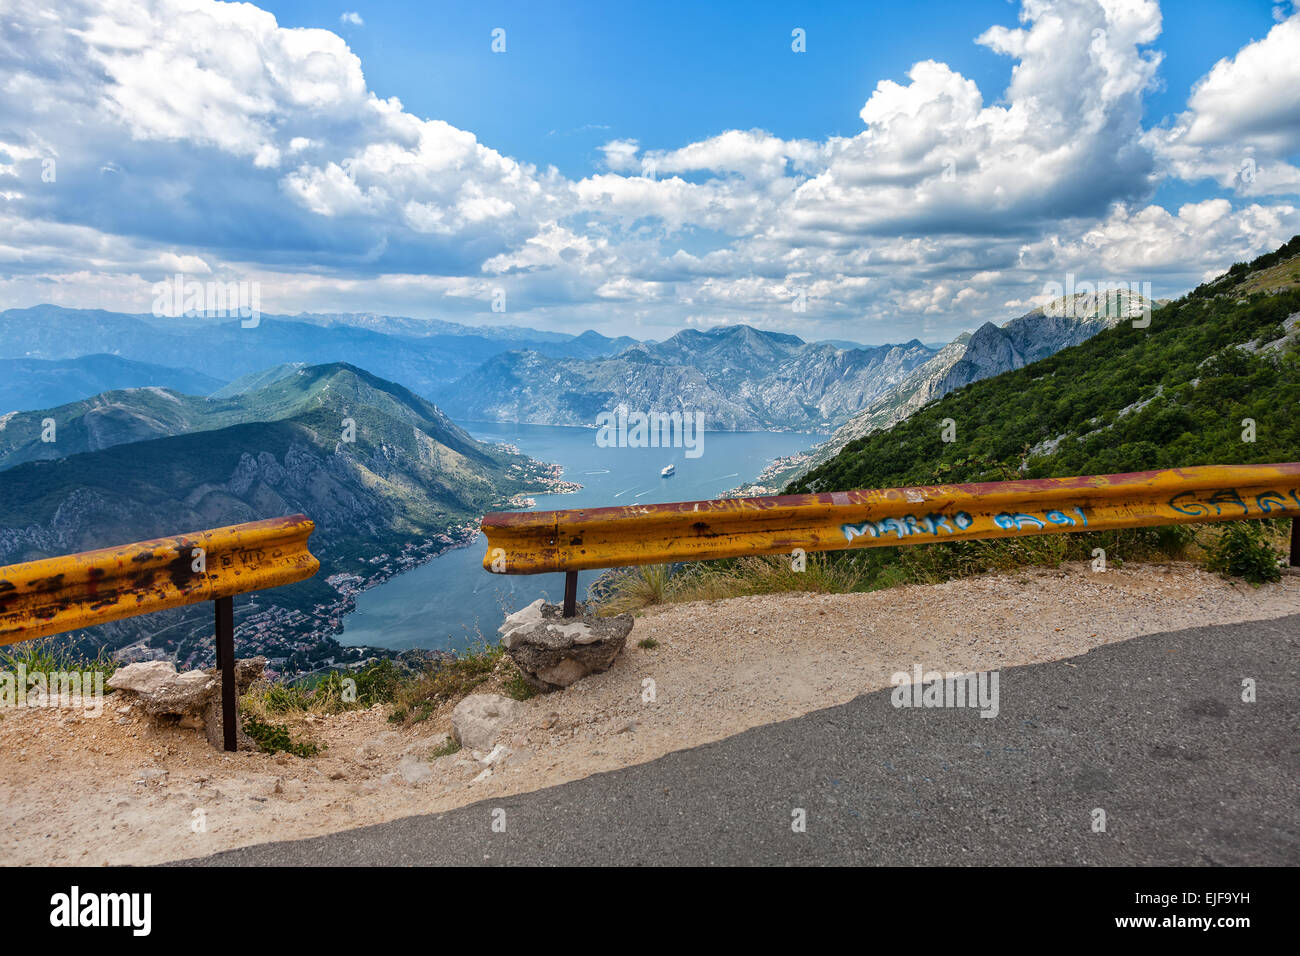 Peligroso camino de montaña por un precipicio en el fondo de la bahía de Kotor, Montenegro. Foto de stock